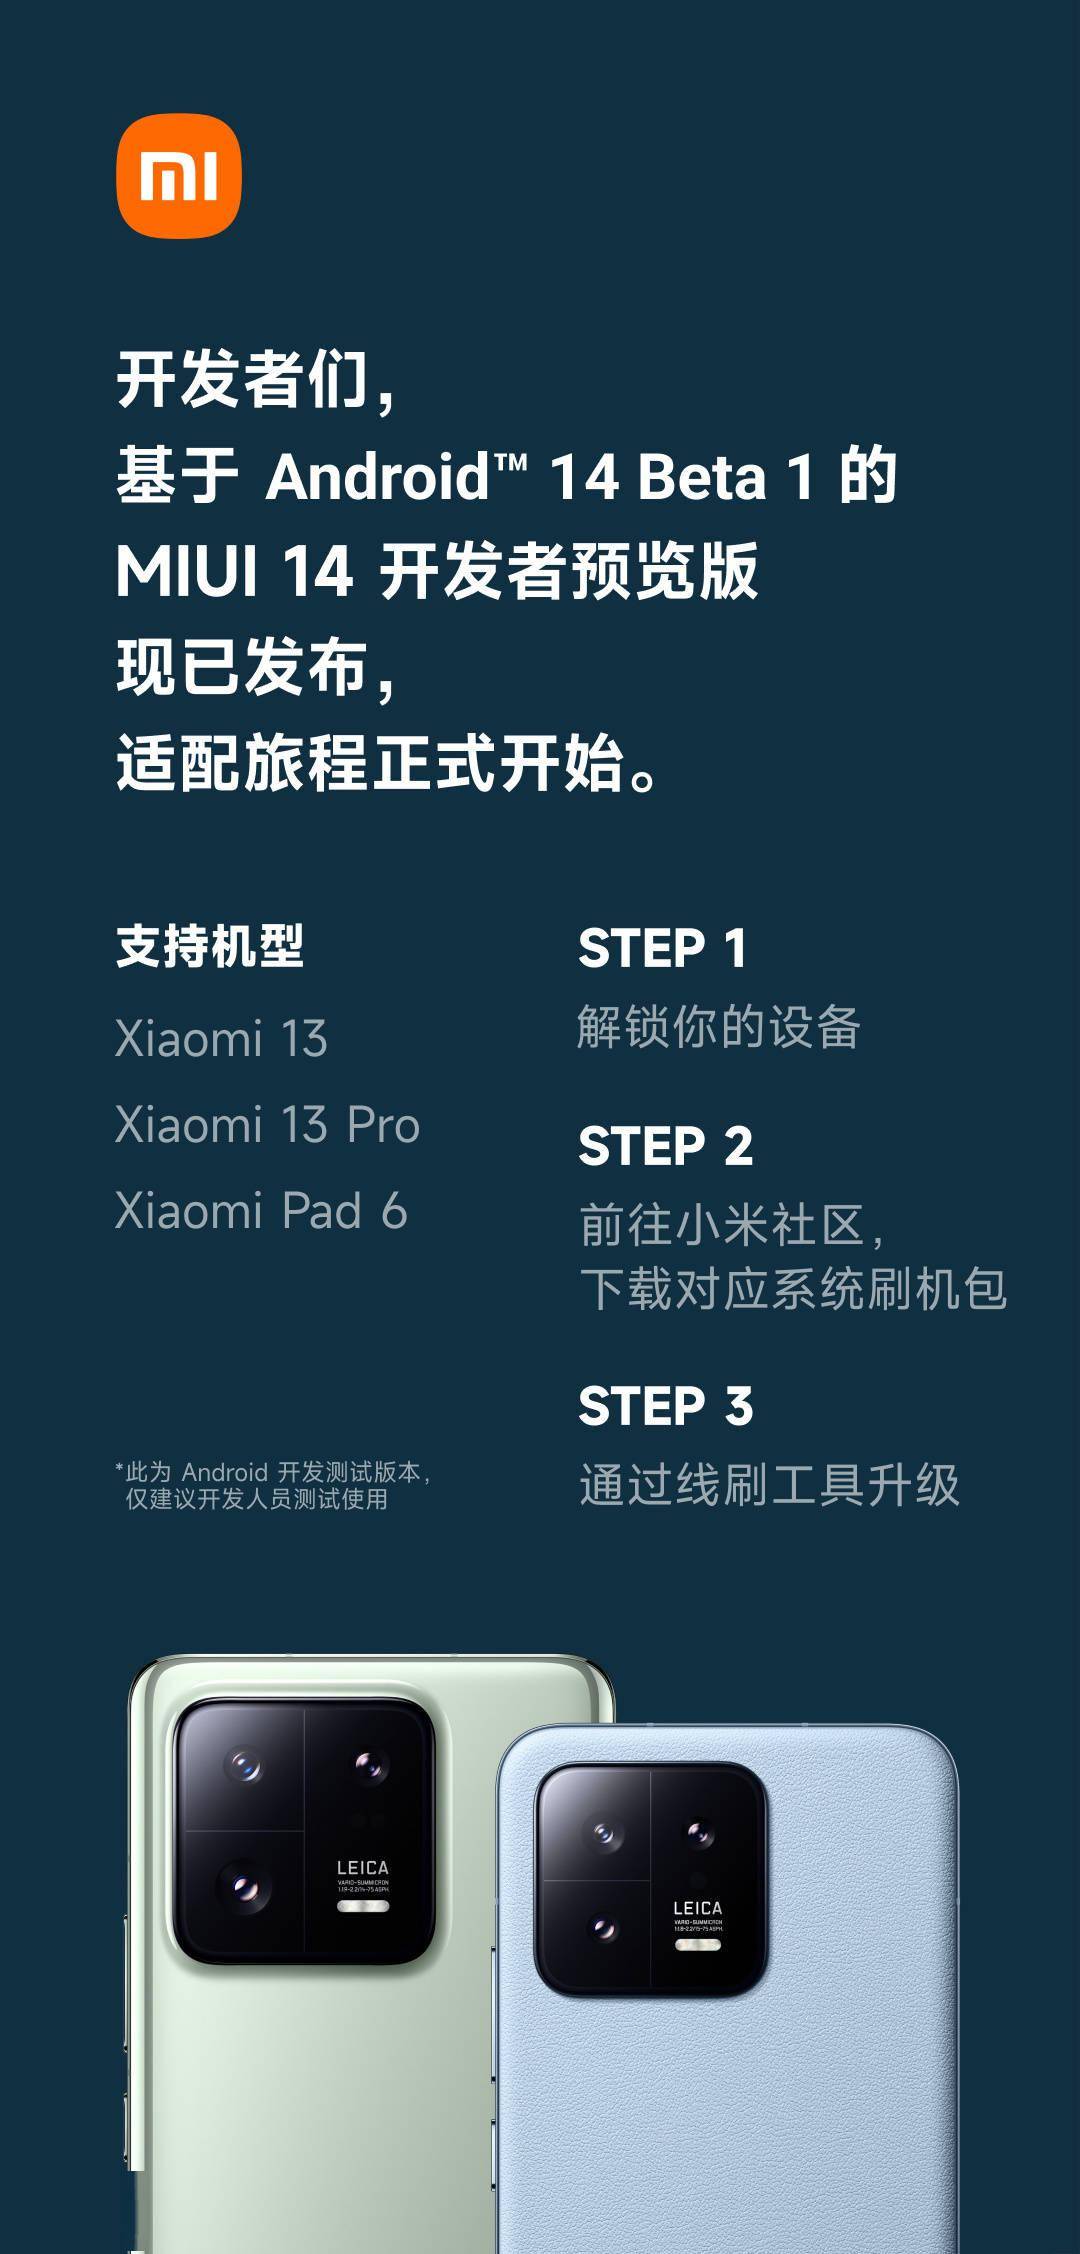 MIUI 14开发者预览版上线 支持Xiaomi 13、Xiaomi 13 Pro及Xiaomi Pad 6